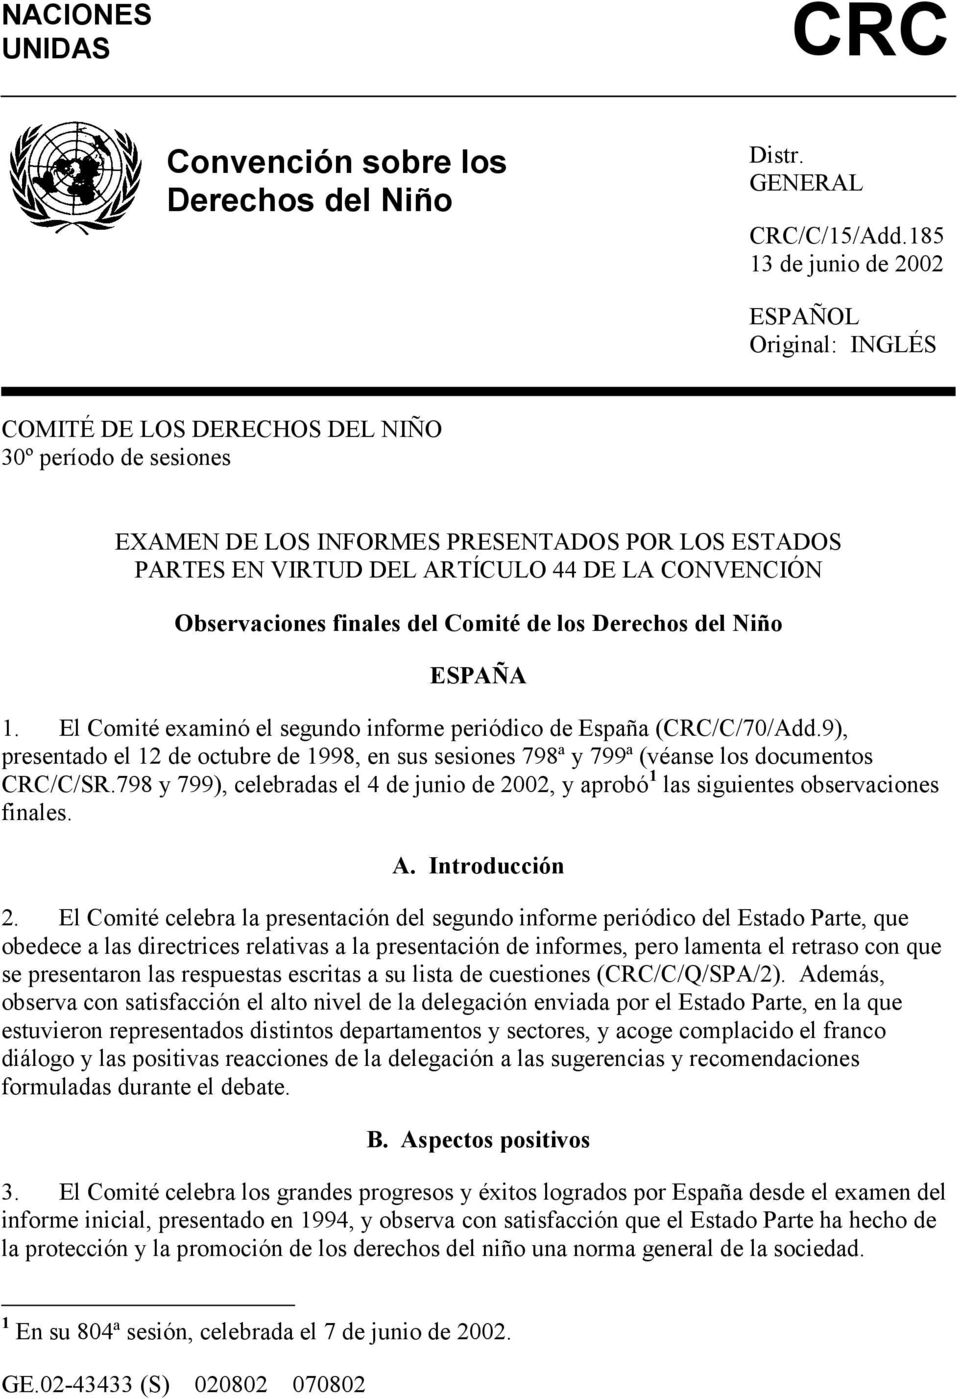 CONVENCIÓN Observaciones finales del Comité de los Derechos del Niño ESPAÑA 1. El Comité examinó el segundo informe periódico de España (CRC/C/70/Add.